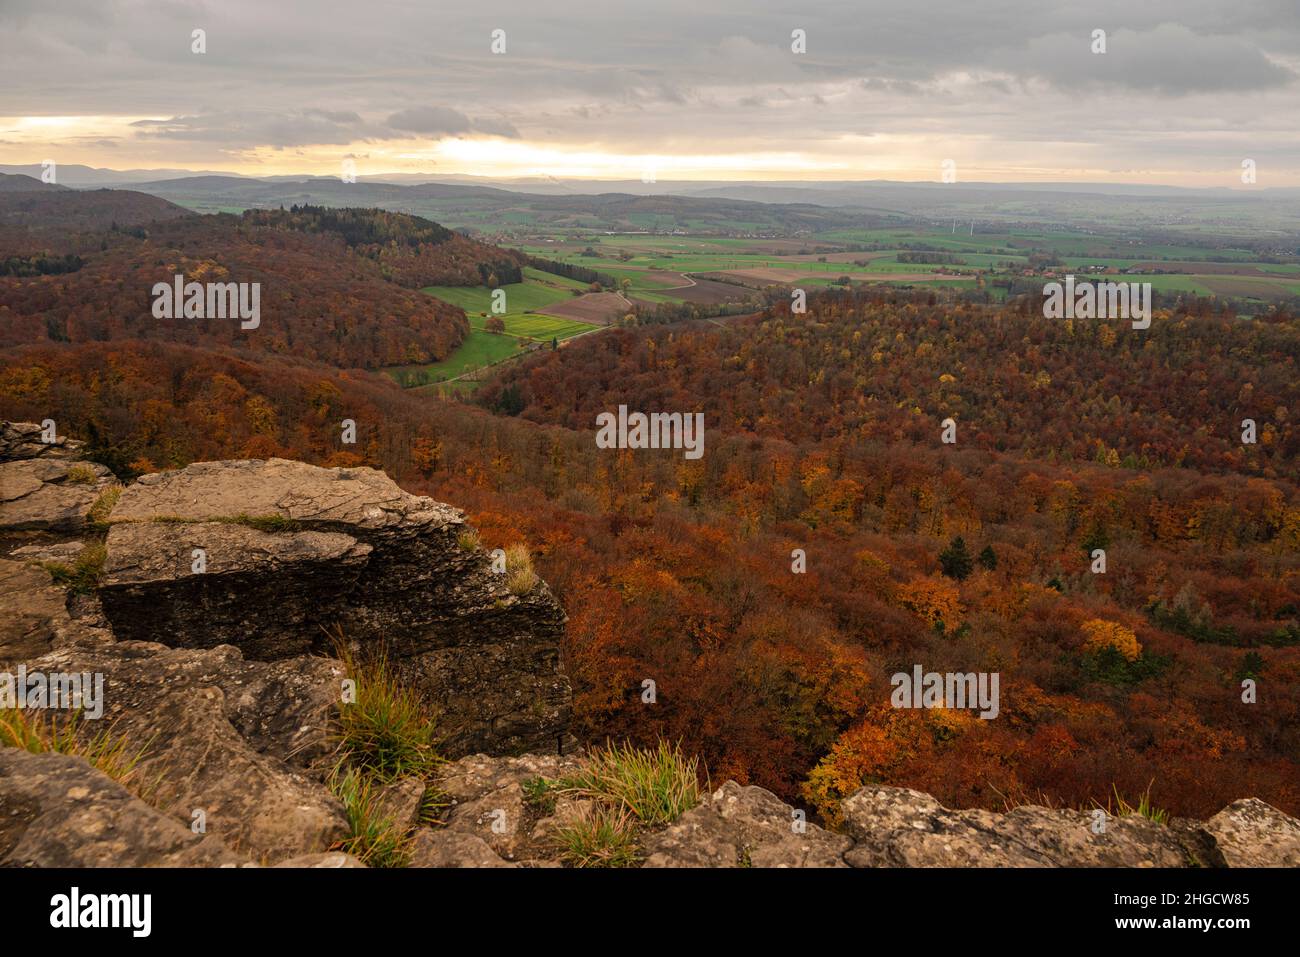 Magnifica vista panoramica su un paesaggio forestale autunnale, visto dall'altopiano roccioso di Hohenstein, Süntel, Weser Uplands, bassa Sassonia, Germania Foto Stock